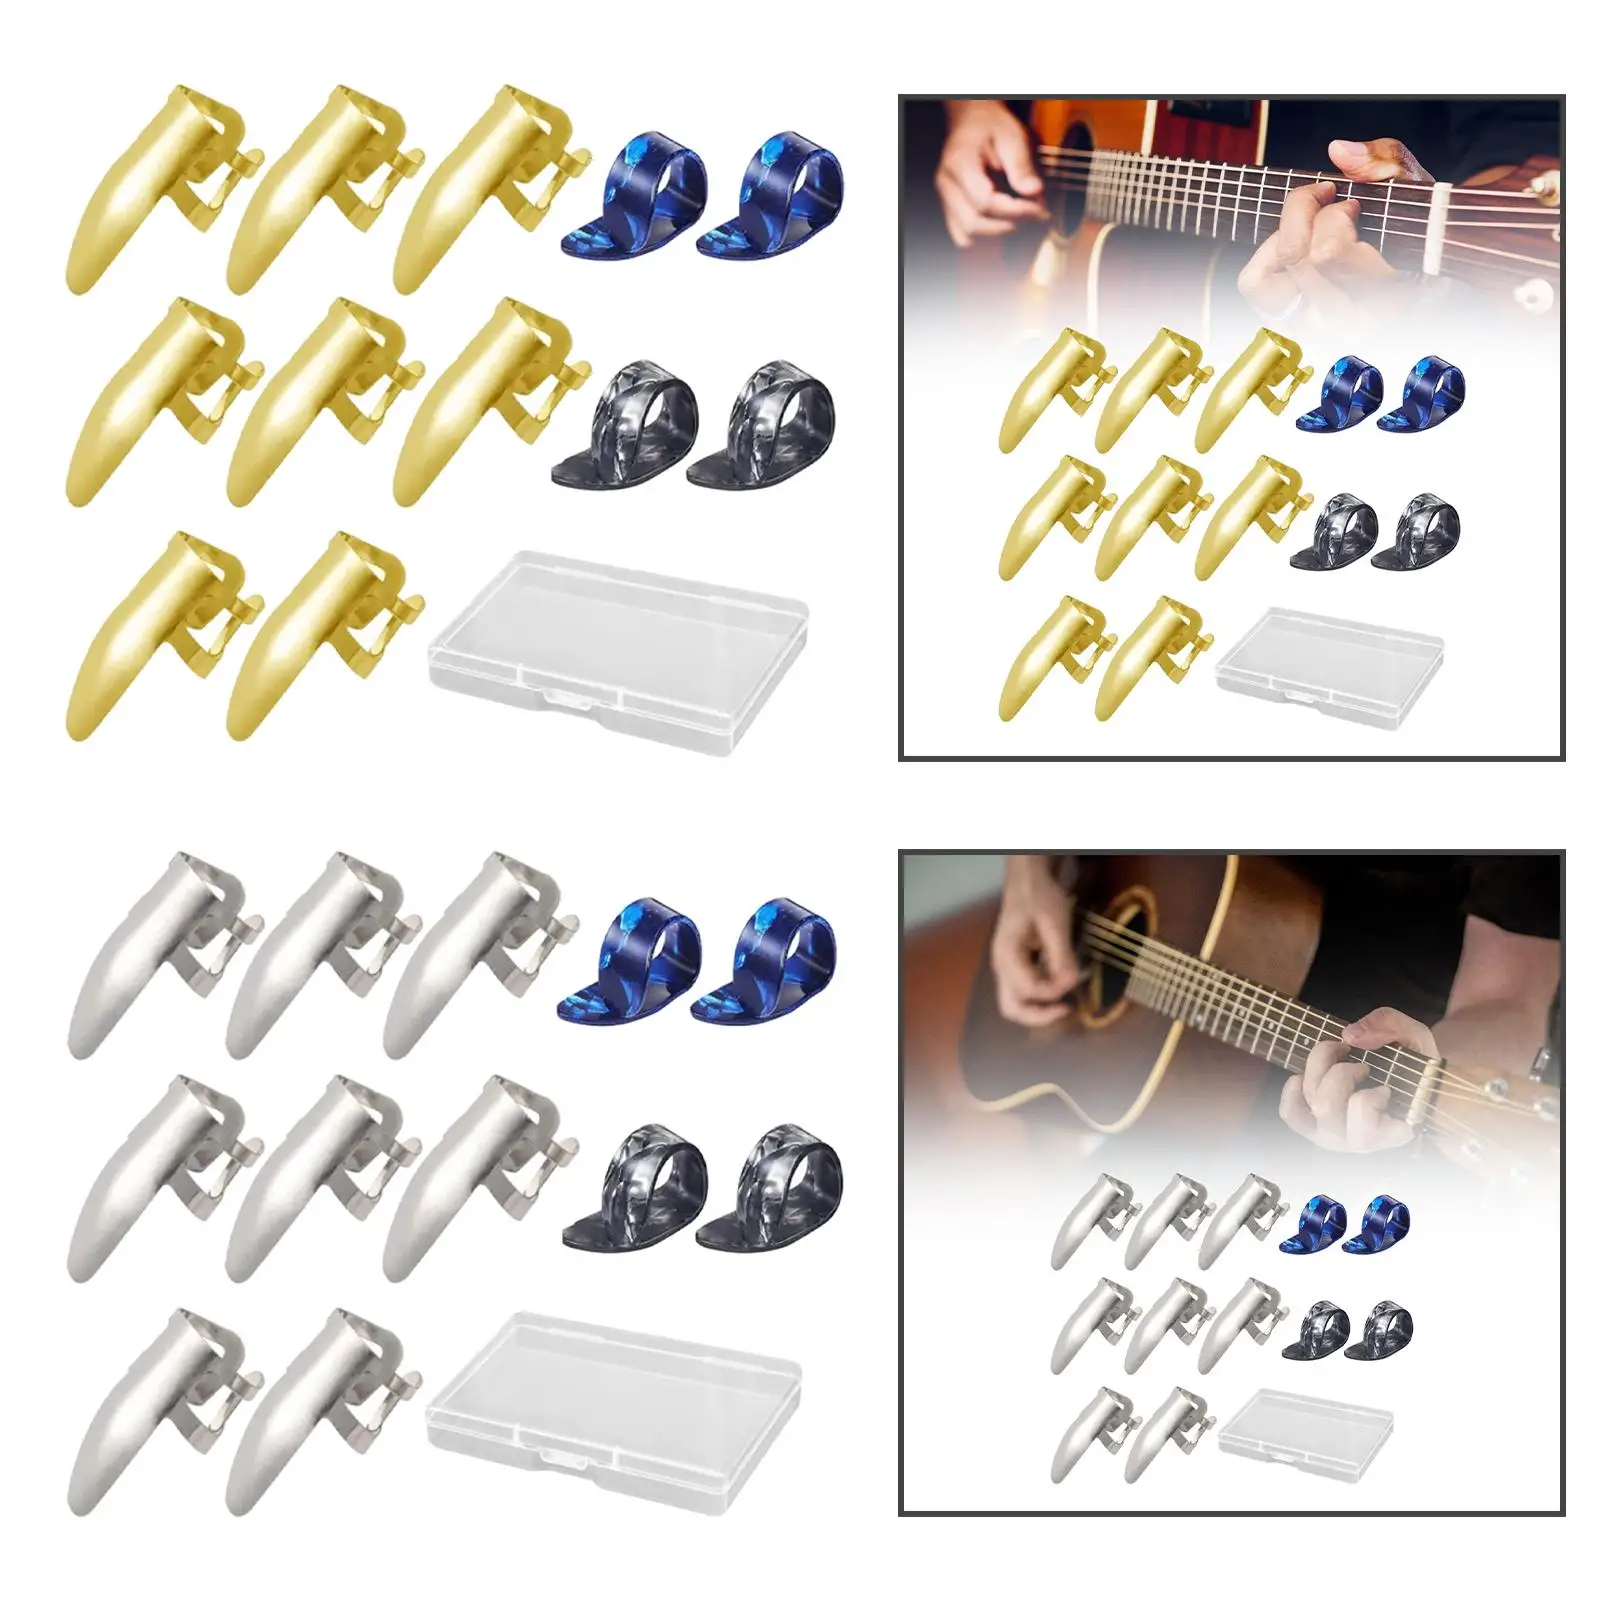 Guitar Accessories Set Guitar Accessories Guitar Finger Pick Plectrums Slide